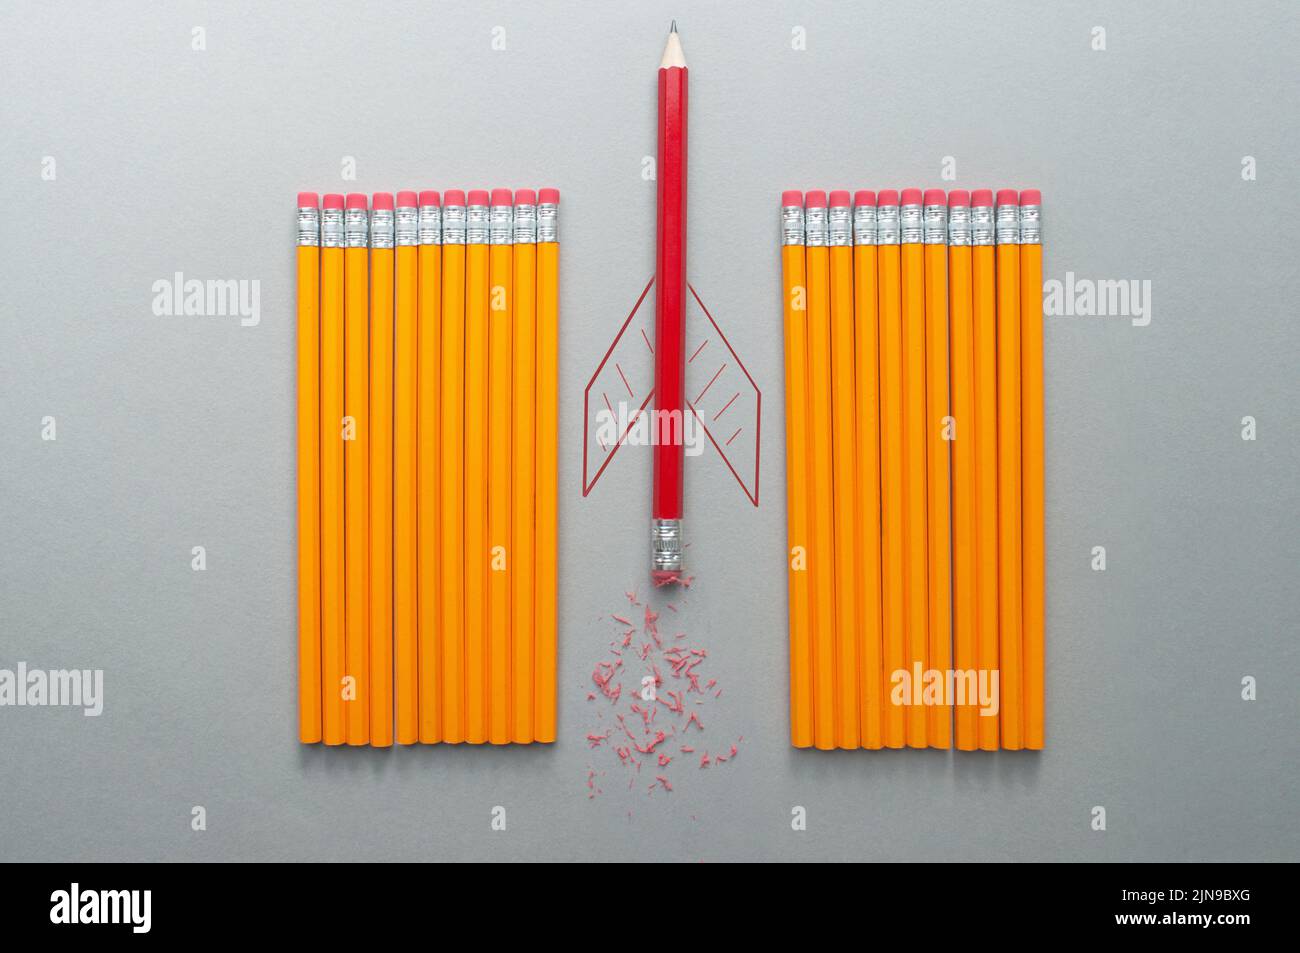 Roter Bleistift mit Raketenskizze, der sich zwischen einer Reihe orangefarbener Bleistifte heraussticht Stockfoto